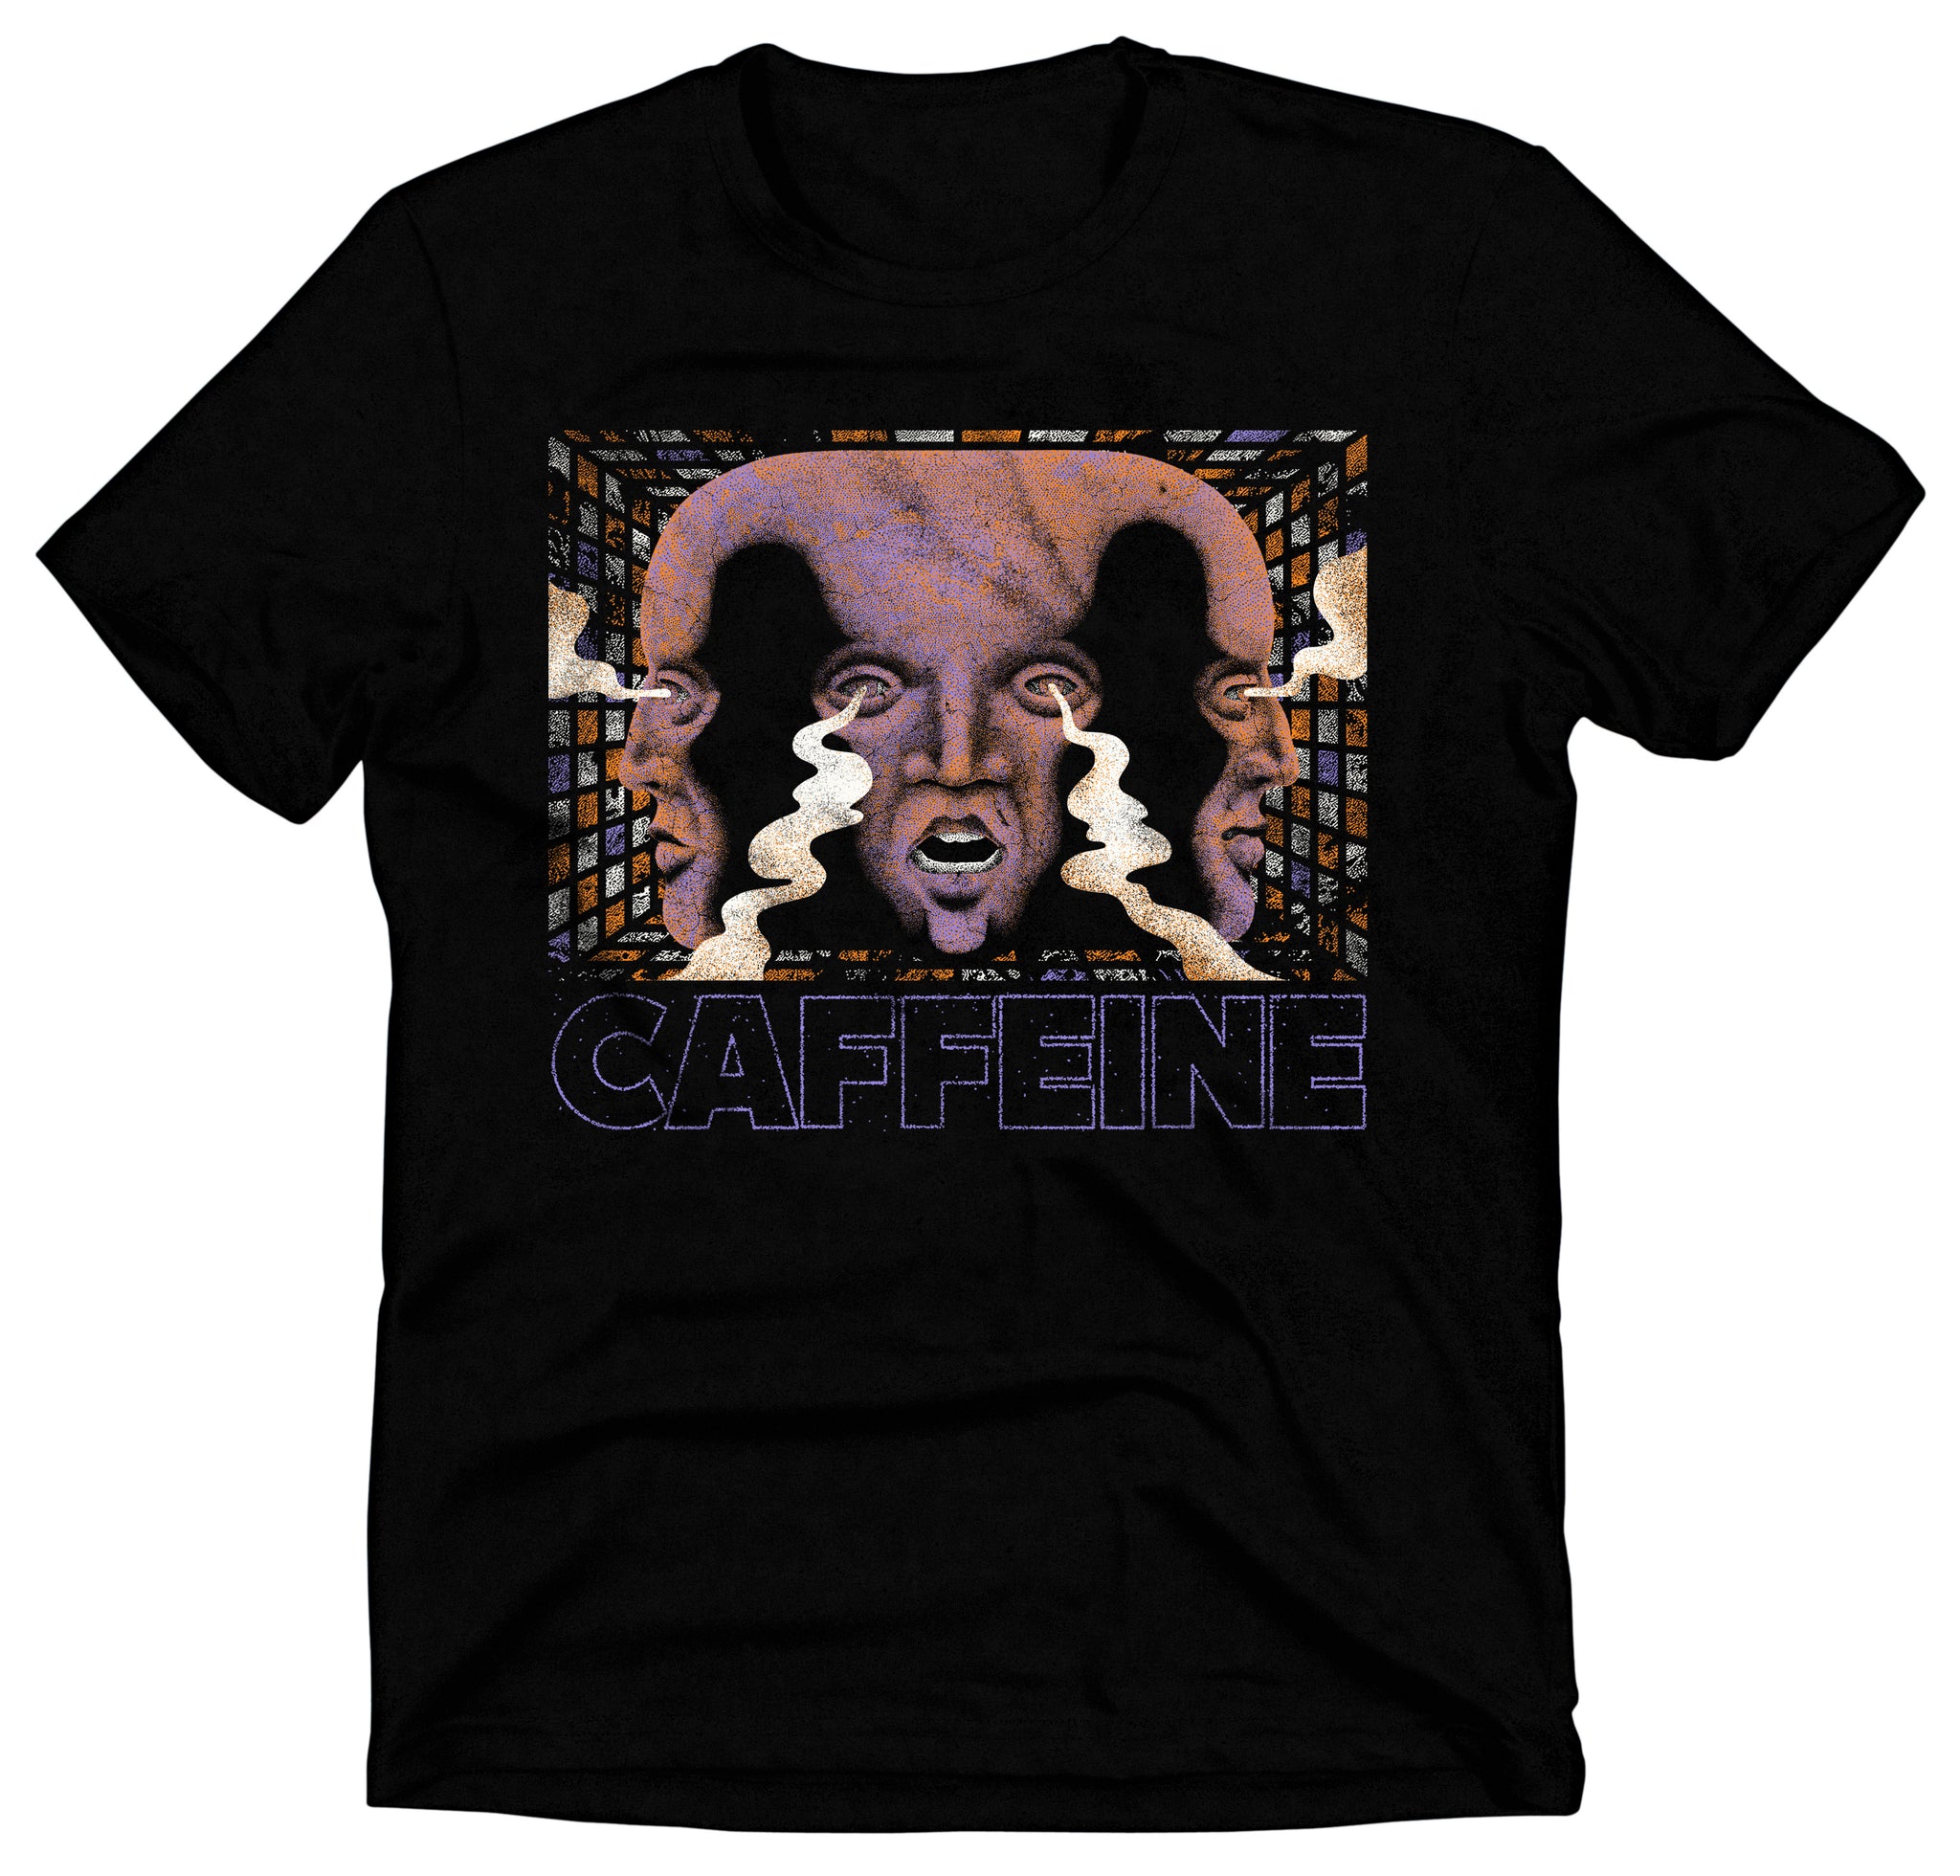 Caffeine T-Shirt (NOT FOR SALE!)